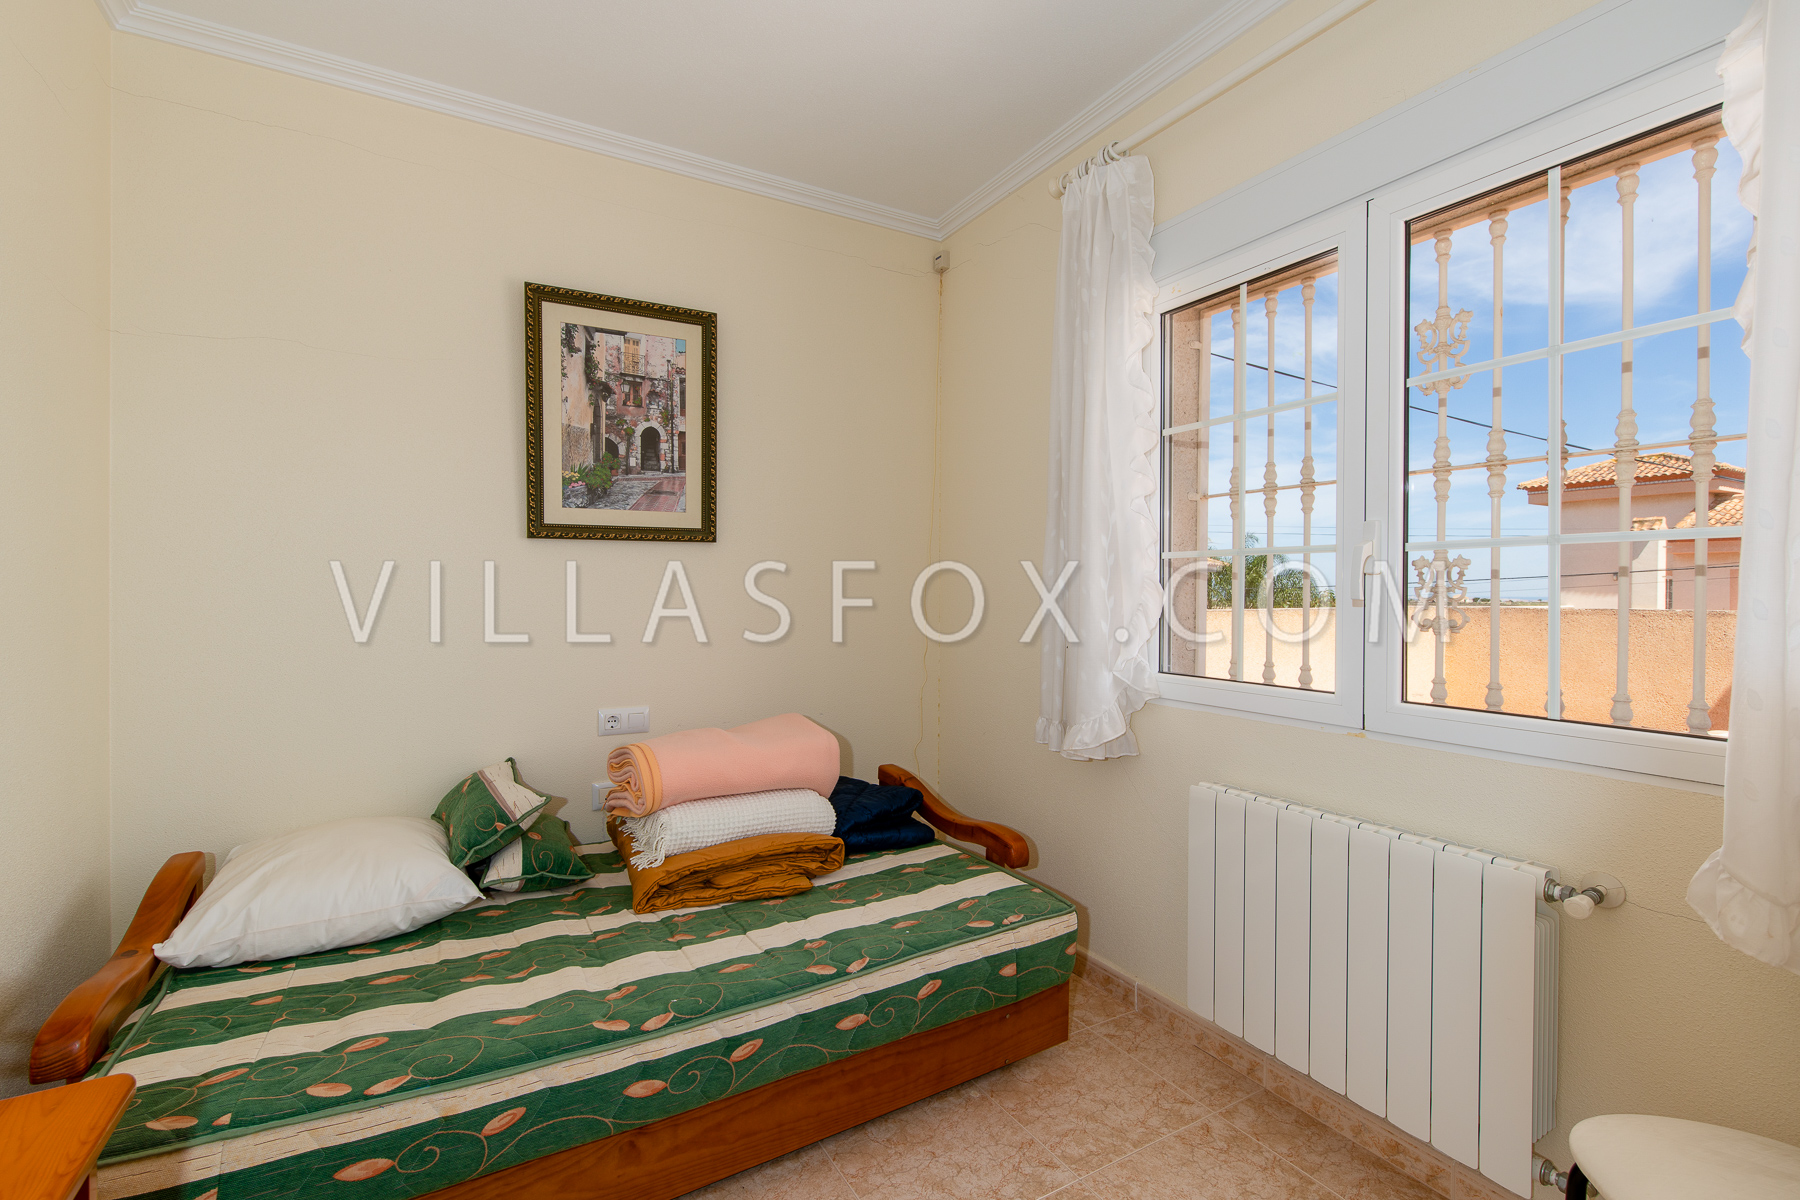 Torrestrella-Villa zu verkaufen Las Comunicaciones San Miguel de Salinas Villas Fox-52